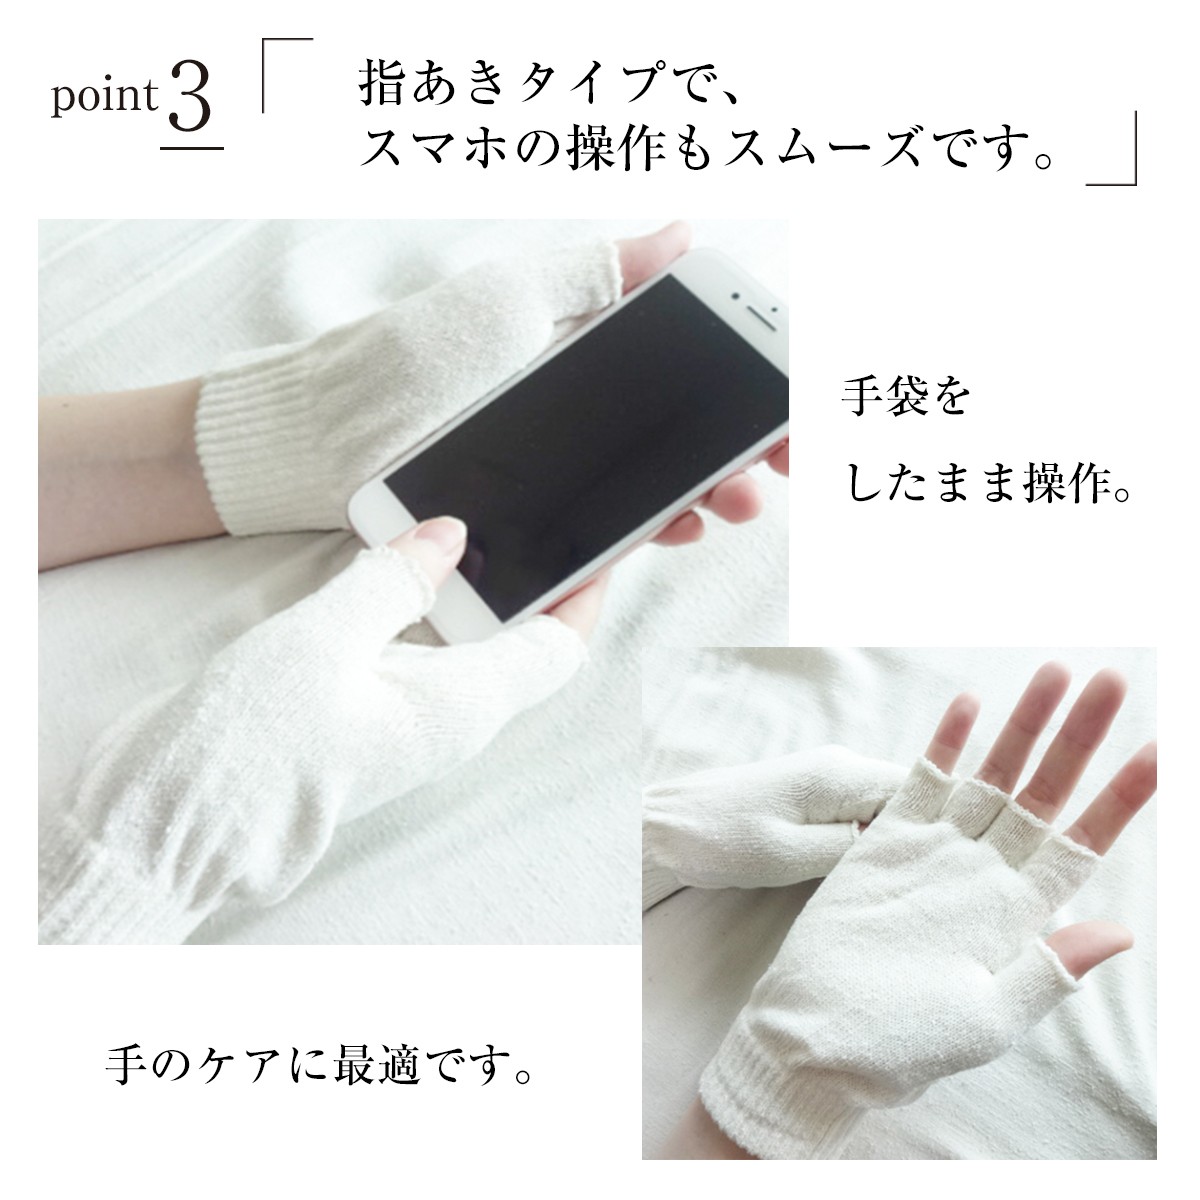  шелк перчатки сделано в Японии шелк перчатки смартфон соответствует женский мужской работа для охлаждение брать . палец нет палец .. выходить гетры для рук 